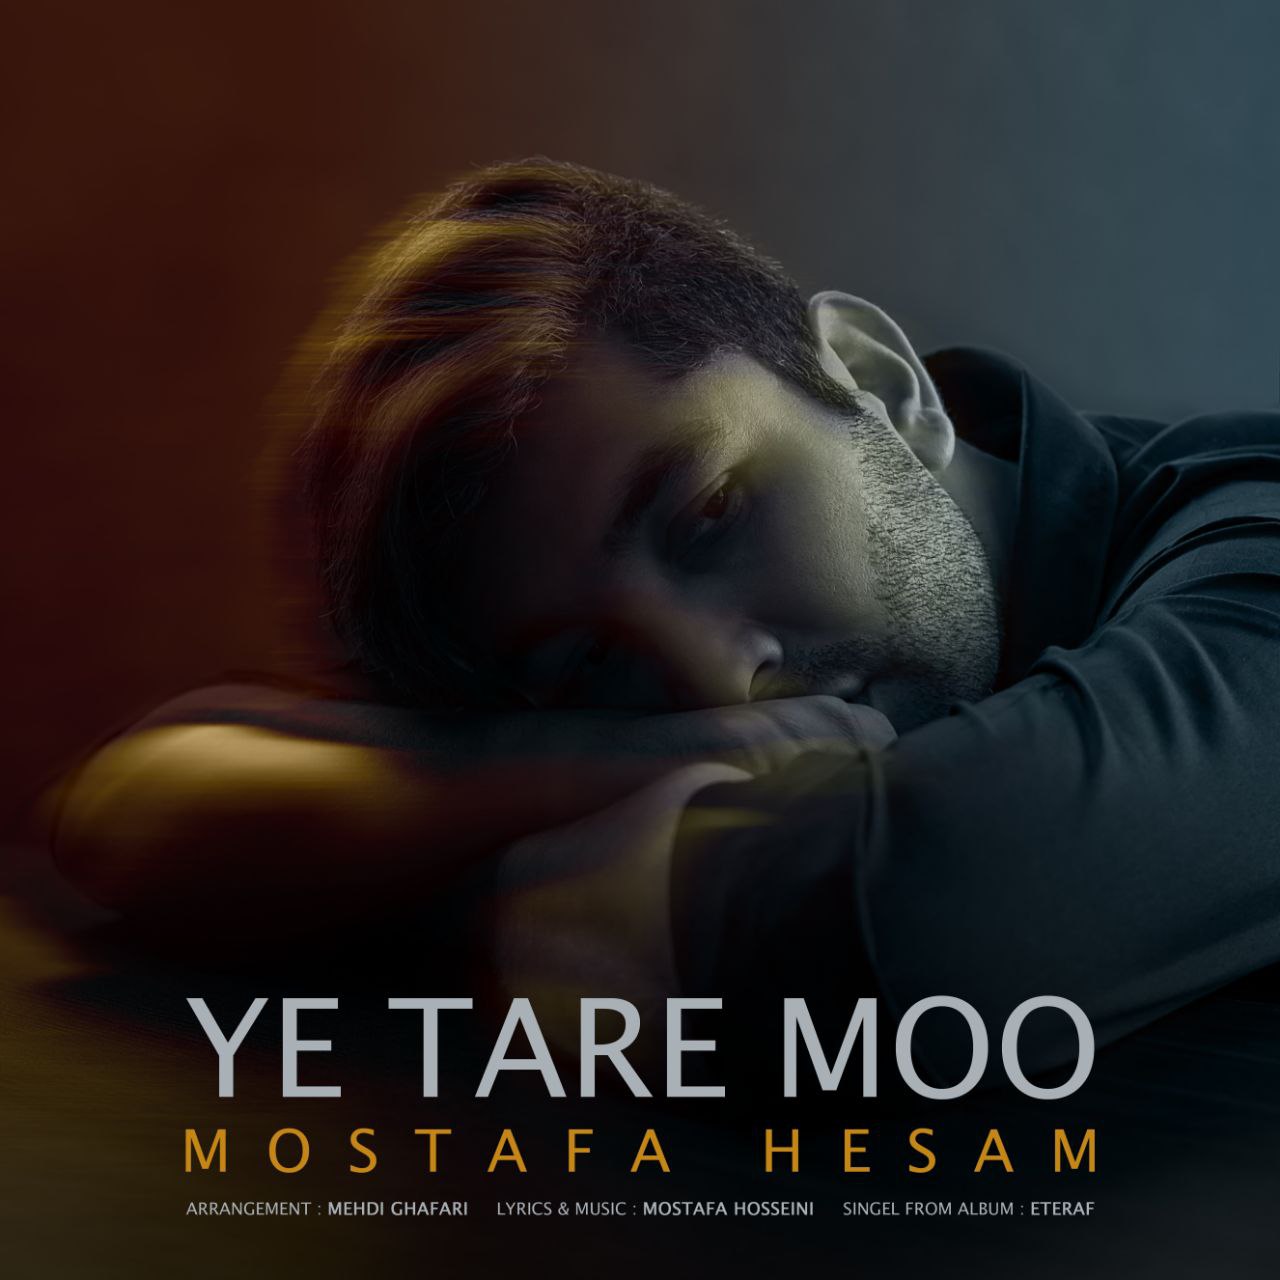 دانلود آهنگ جدید مصطفی حسام به نام یه تار مو